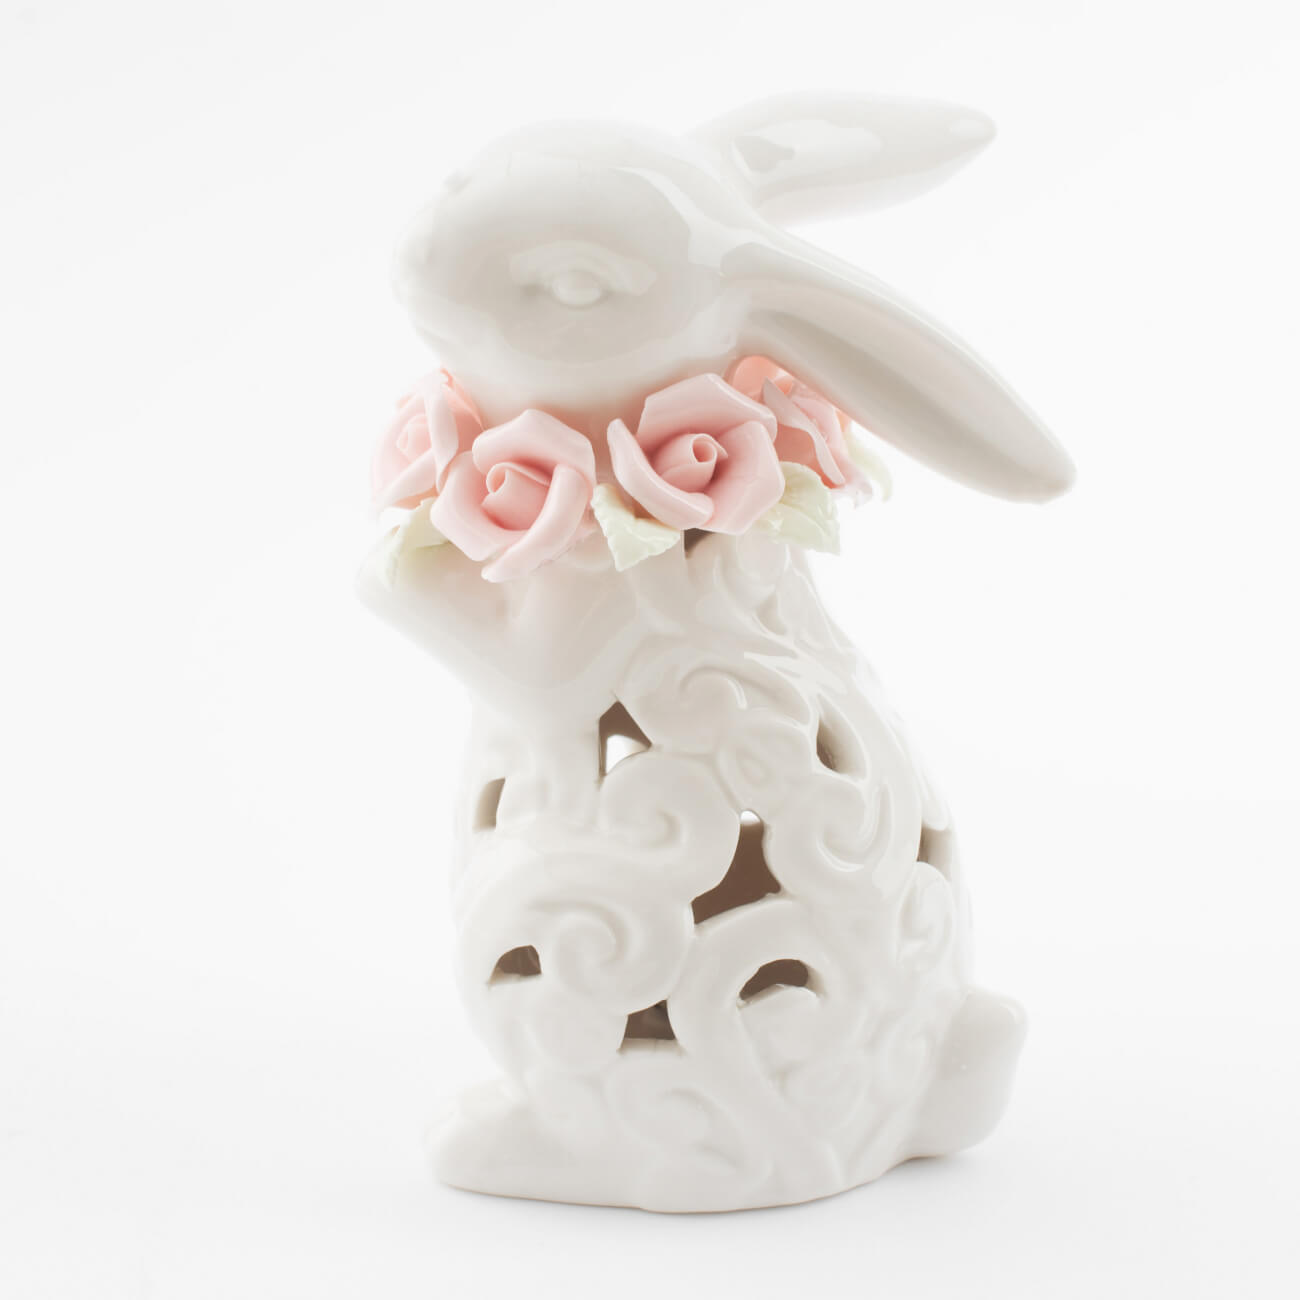 статуэтка с подсветкой 13 см фарфор p белая кролик с ами easter Статуэтка с подсветкой, 13 см, фарфор P, белая, Кролик с цветами, Easter